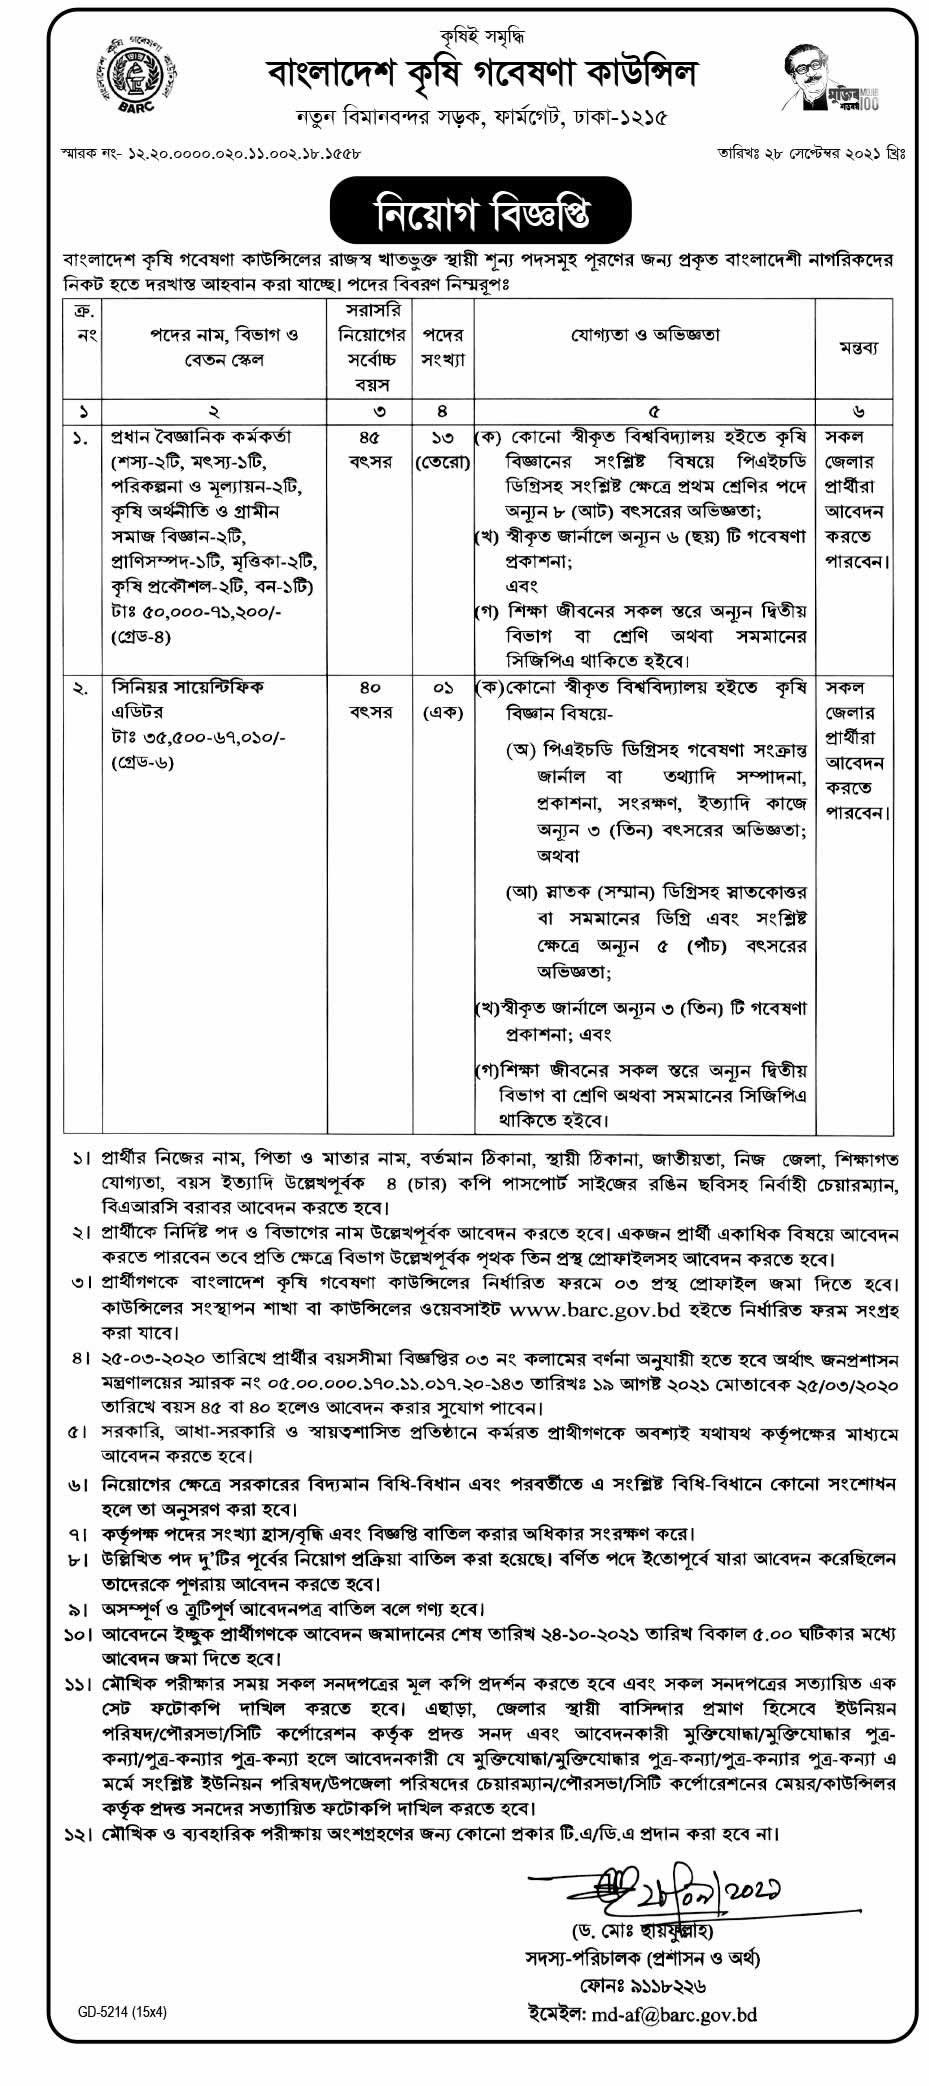 Bangladesh Agricultural Research Council BARC Job Circular Image 2021